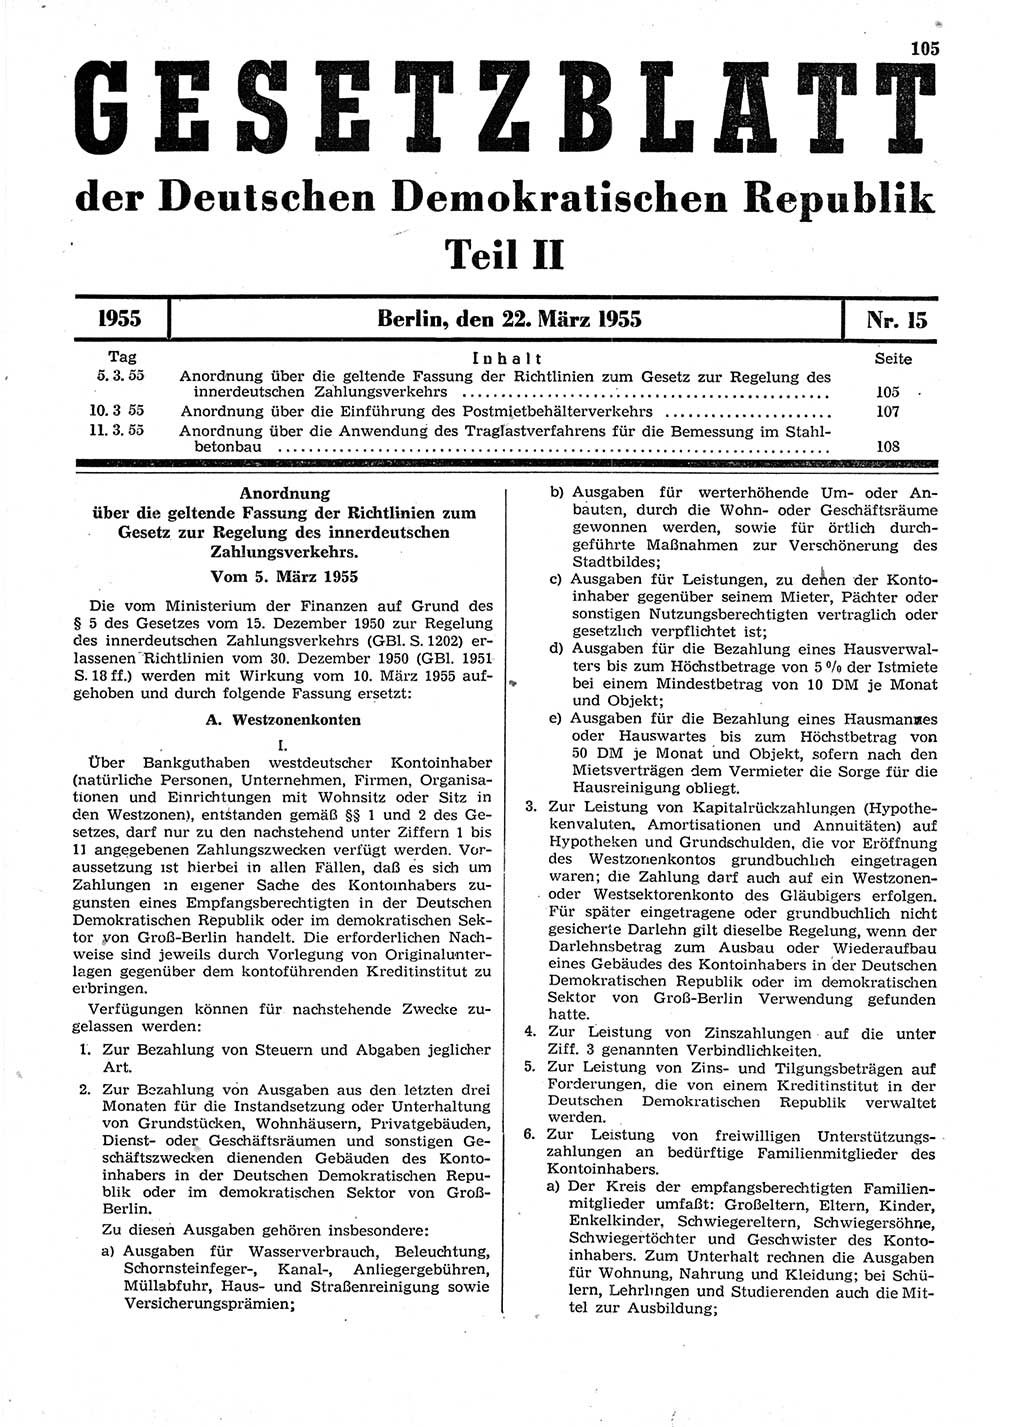 Gesetzblatt (GBl.) der Deutschen Demokratischen Republik (DDR) Teil ⅠⅠ 1955, Seite 105 (GBl. DDR ⅠⅠ 1955, S. 105)